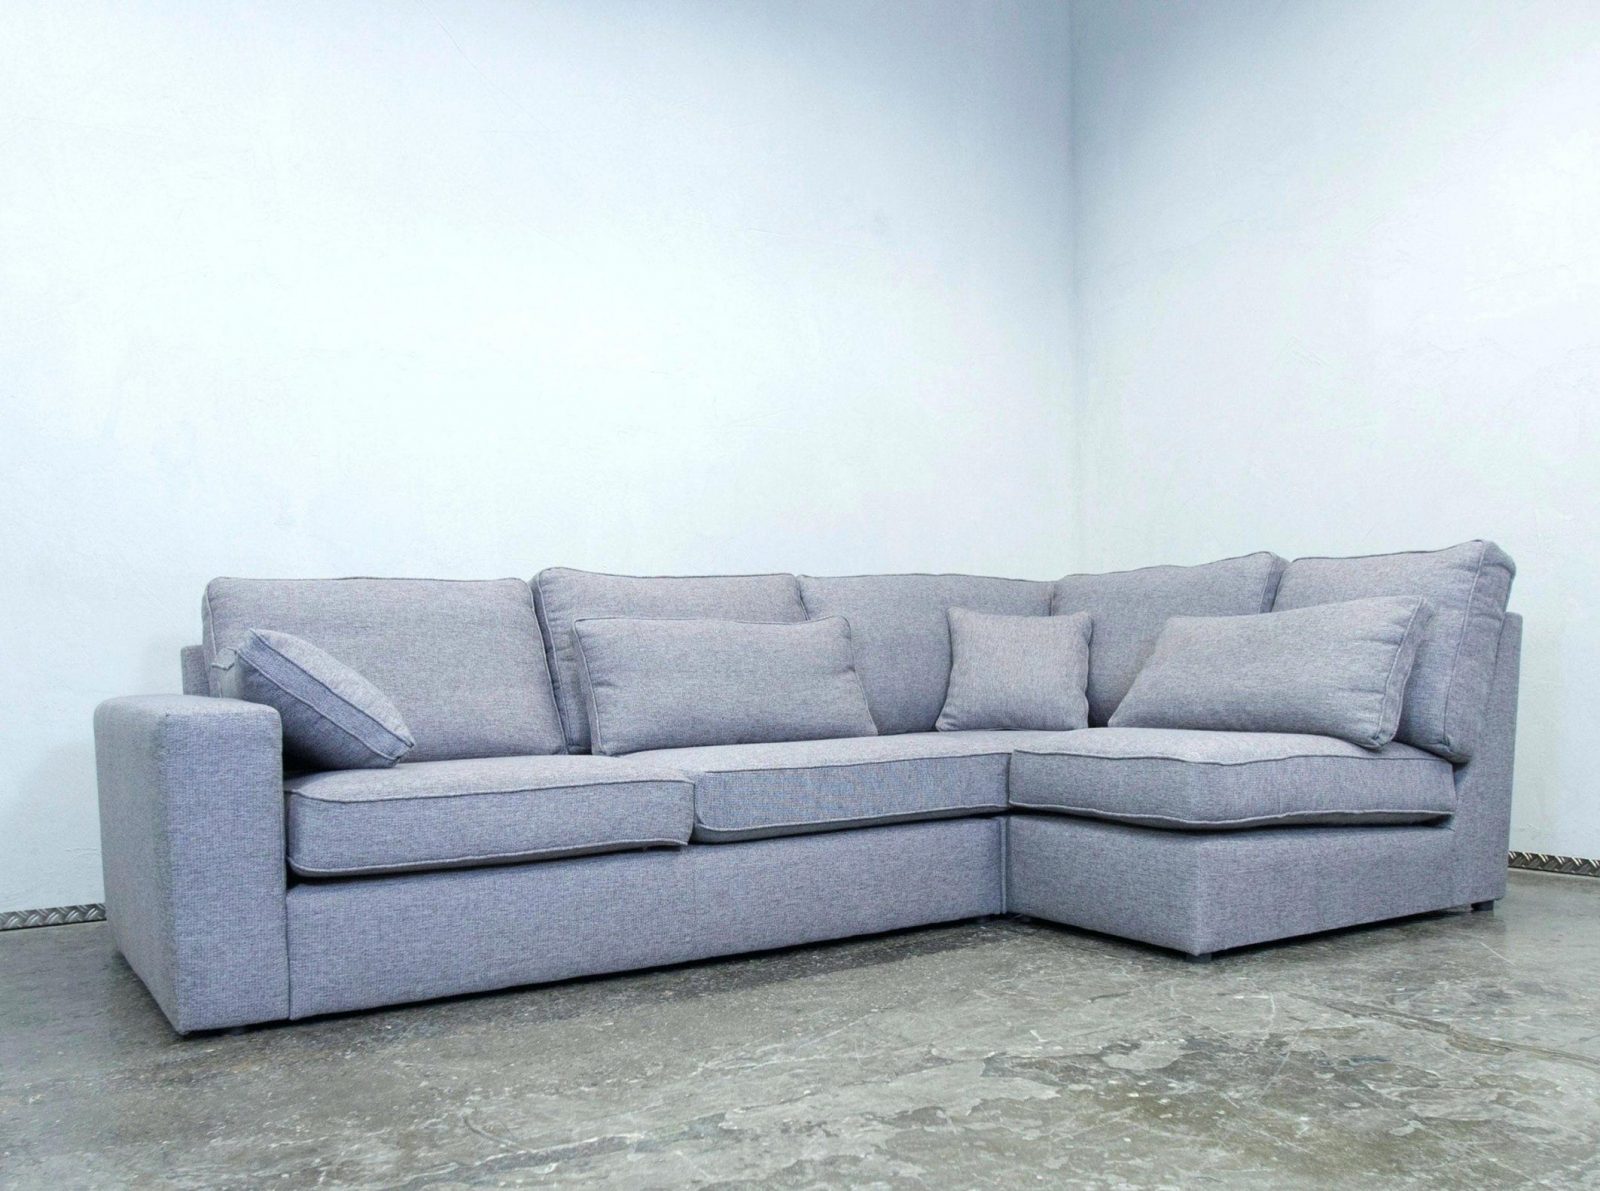 Stoff Fur Couch Full Size Of Sofa Designattraktiv Mikrofaser Fa 1 4 von Stoff Couch Reinigen Hausmittel Bild